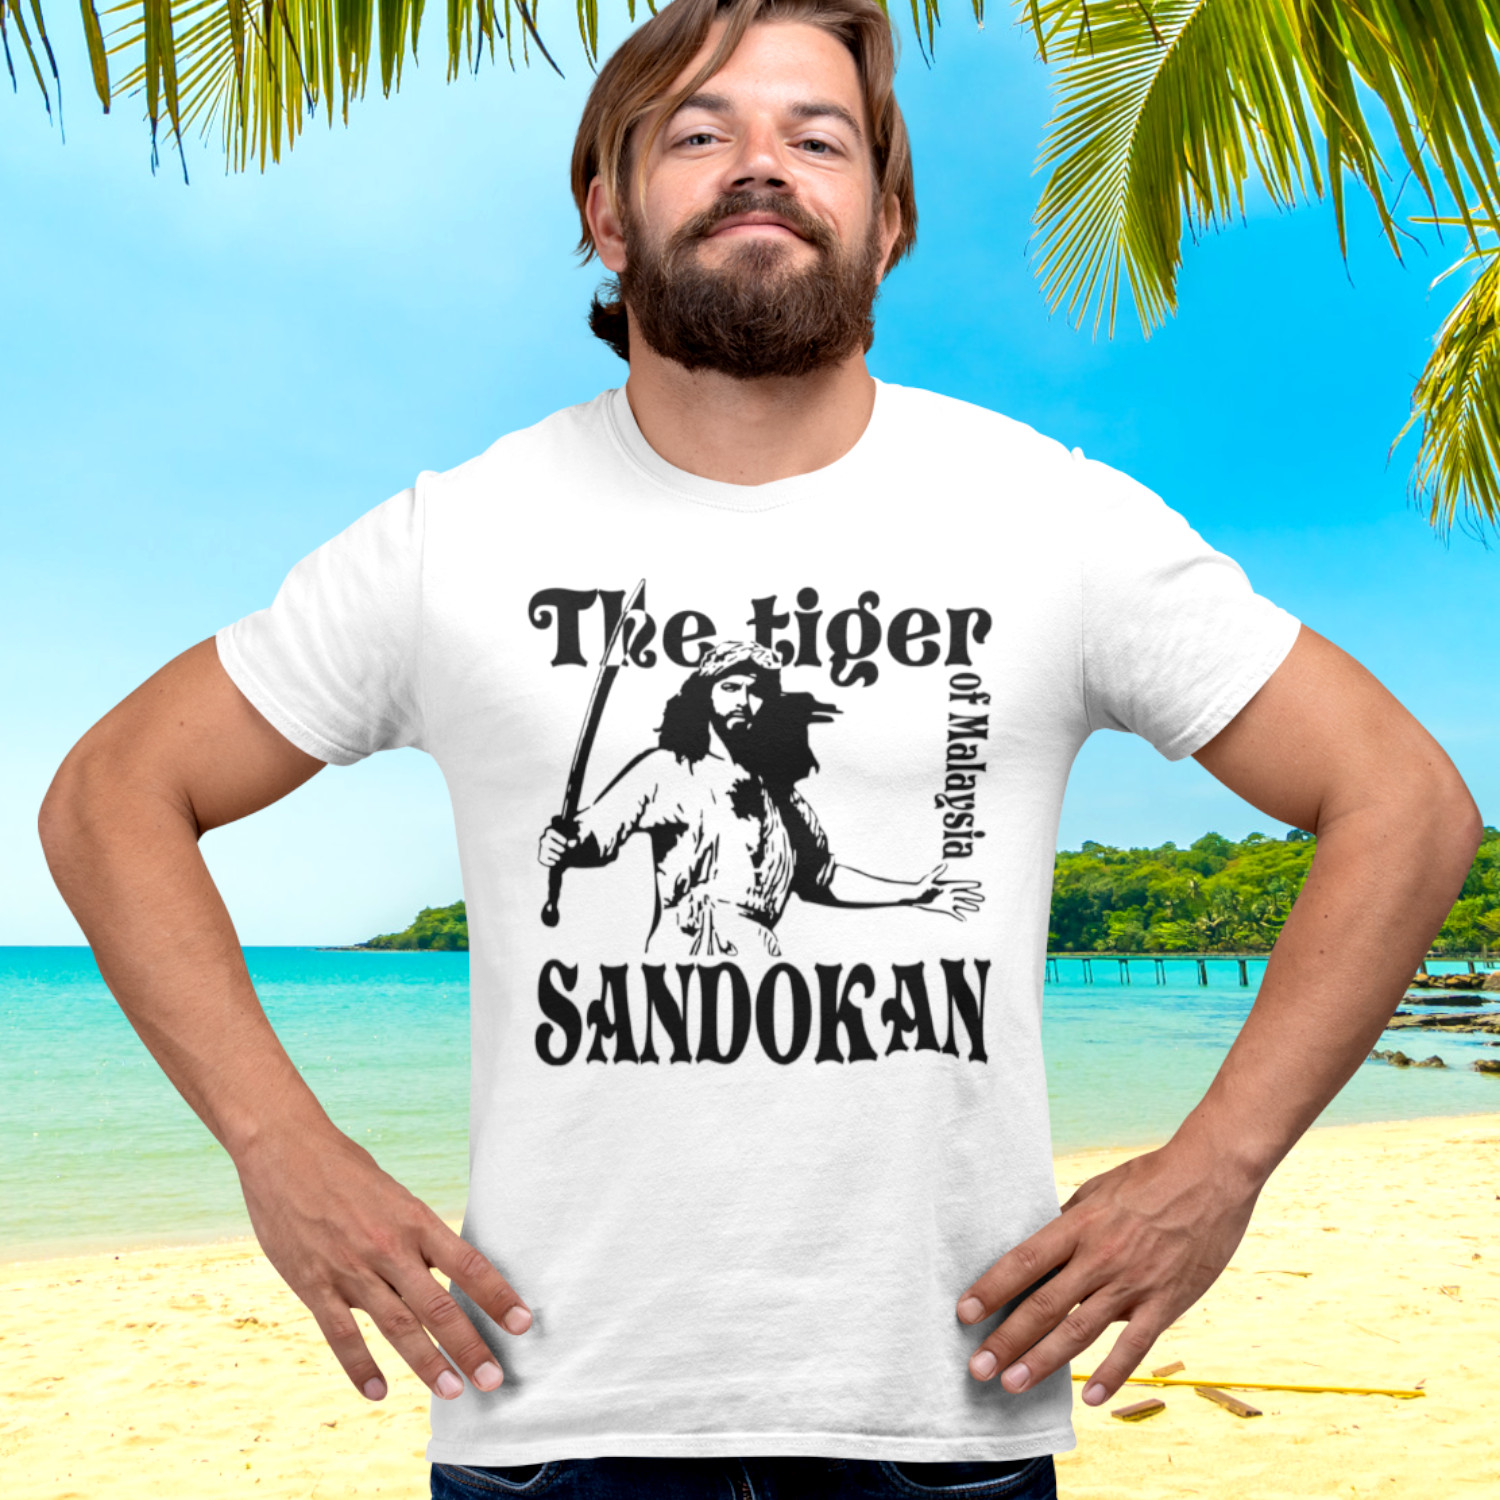 SANDOKAN - pánské tričko černé/bílé 